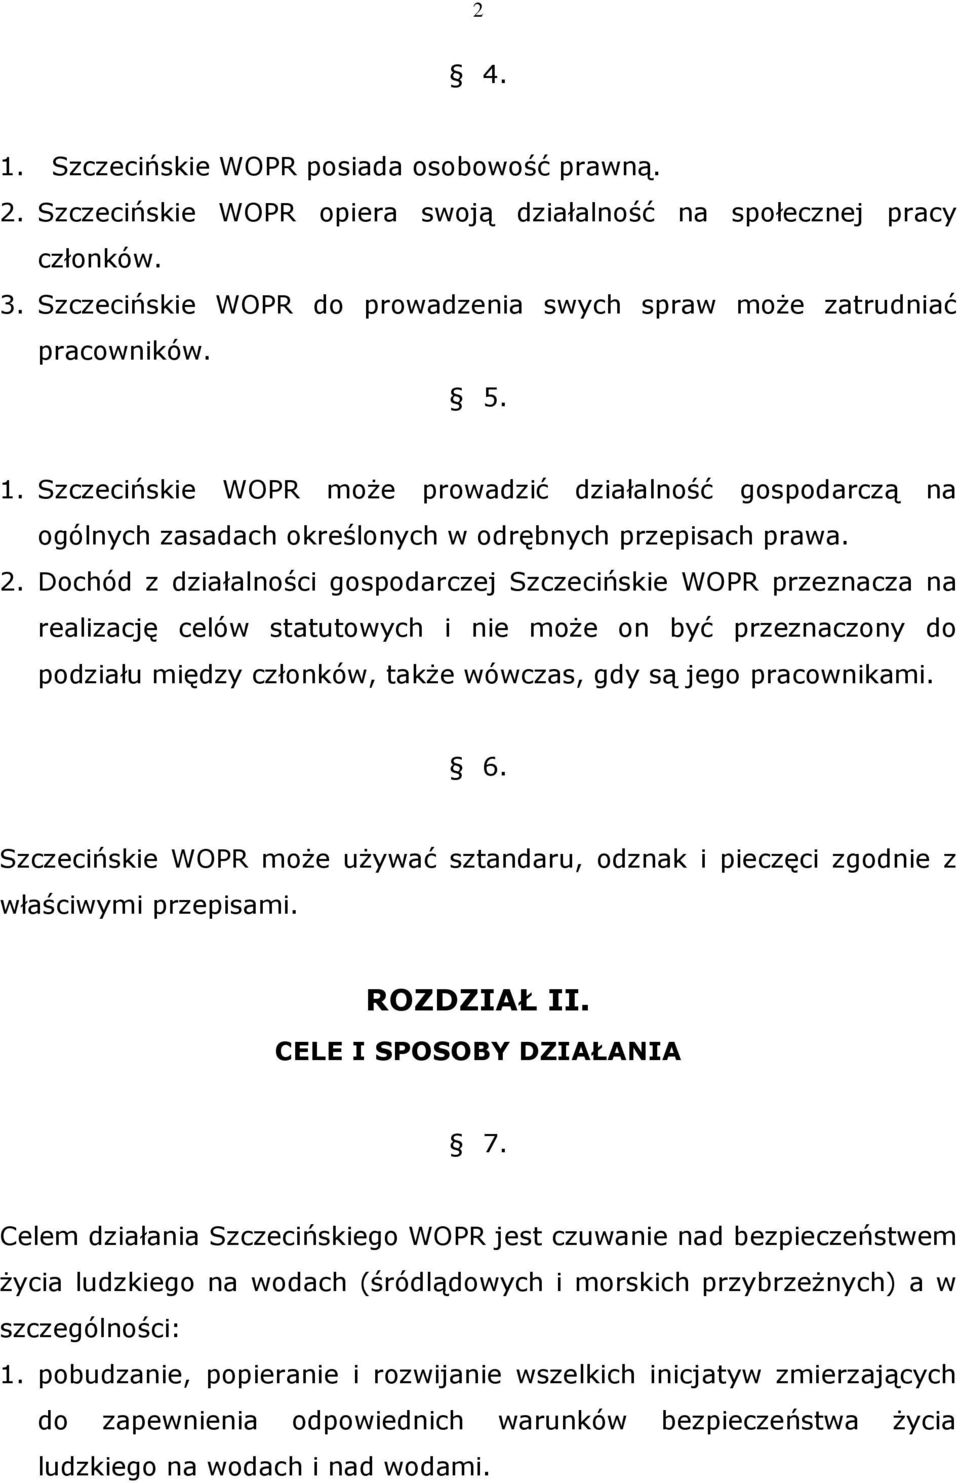 2. Dochód z działalności gospodarczej Szczecińskie WOPR przeznacza na realizację celów statutowych i nie może on być przeznaczony do podziału między członków, także wówczas, gdy są jego pracownikami.